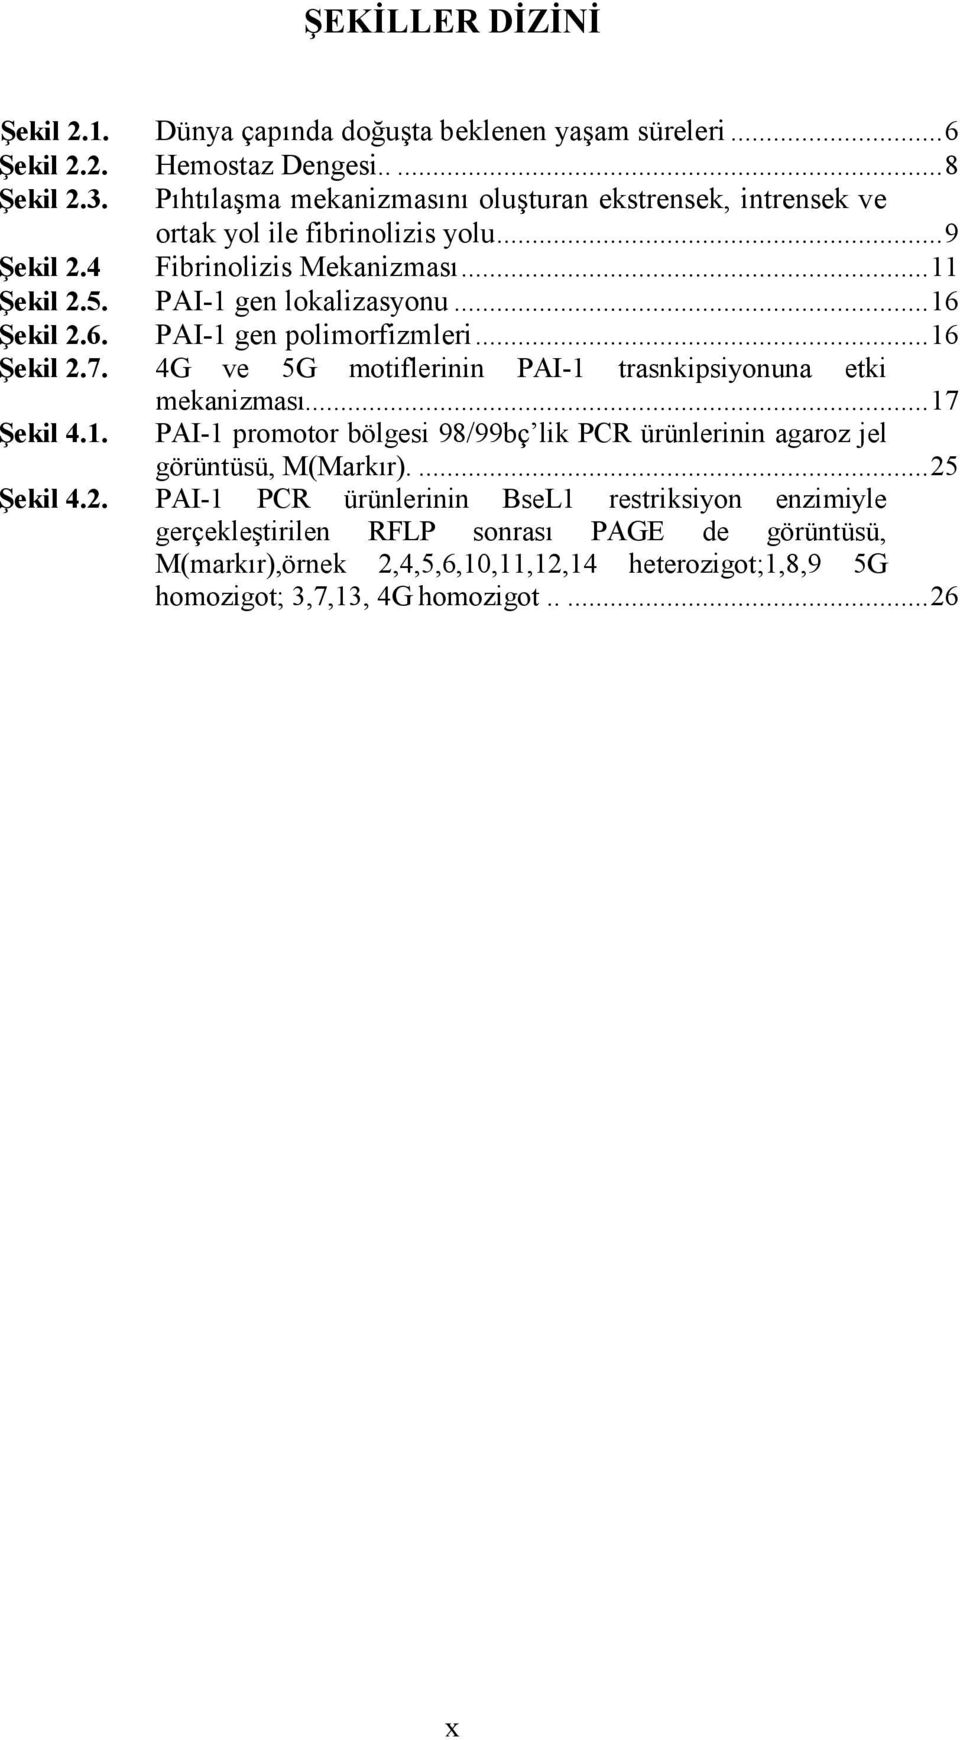 6. PAI-1 gen polimorfizmleri...16 Şekil 2.7. 4G ve 5G motiflerinin PAI-1 trasnkipsiyonuna etki mekanizması...17 Şekil 4.1. PAI-1 promotor bölgesi 98/99bç lik PCR ürünlerinin agaroz jel görüntüsü, M(Markır).